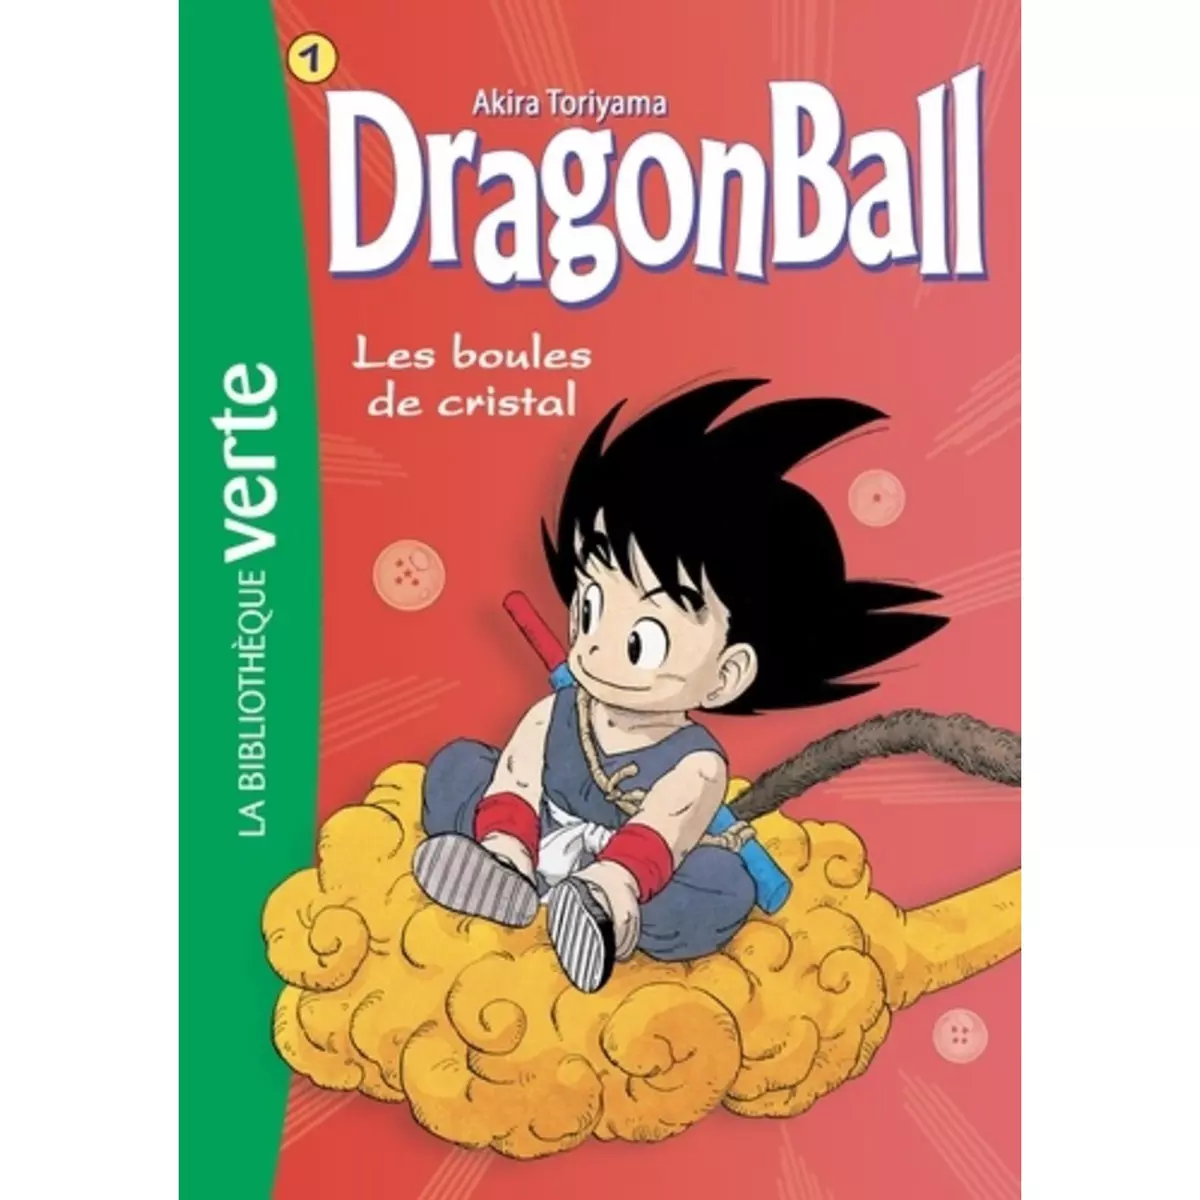  DRAGON BALL TOME 1 : LES BOULES DE CRISTAL, Toriyama Akira